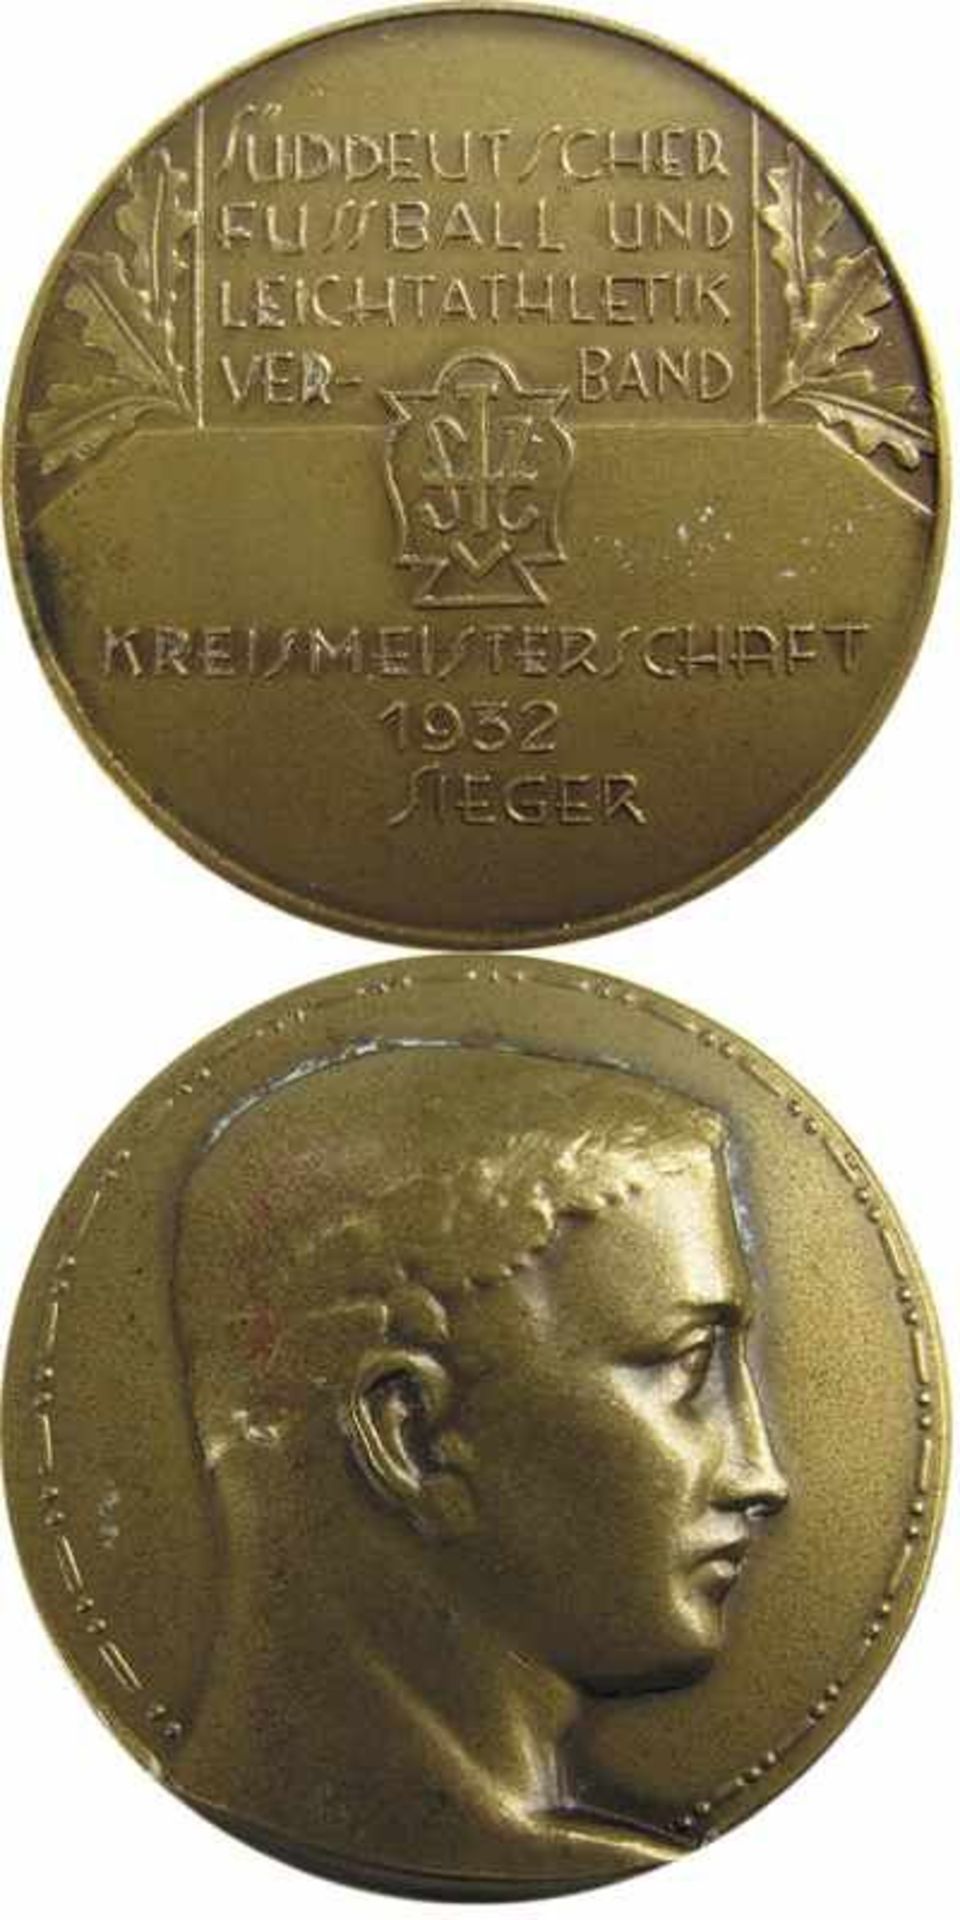 Bronze medal "Kreismeisterschaft 1932 Sieger" - München,Bayern-Medaille - Bronze Medaille des